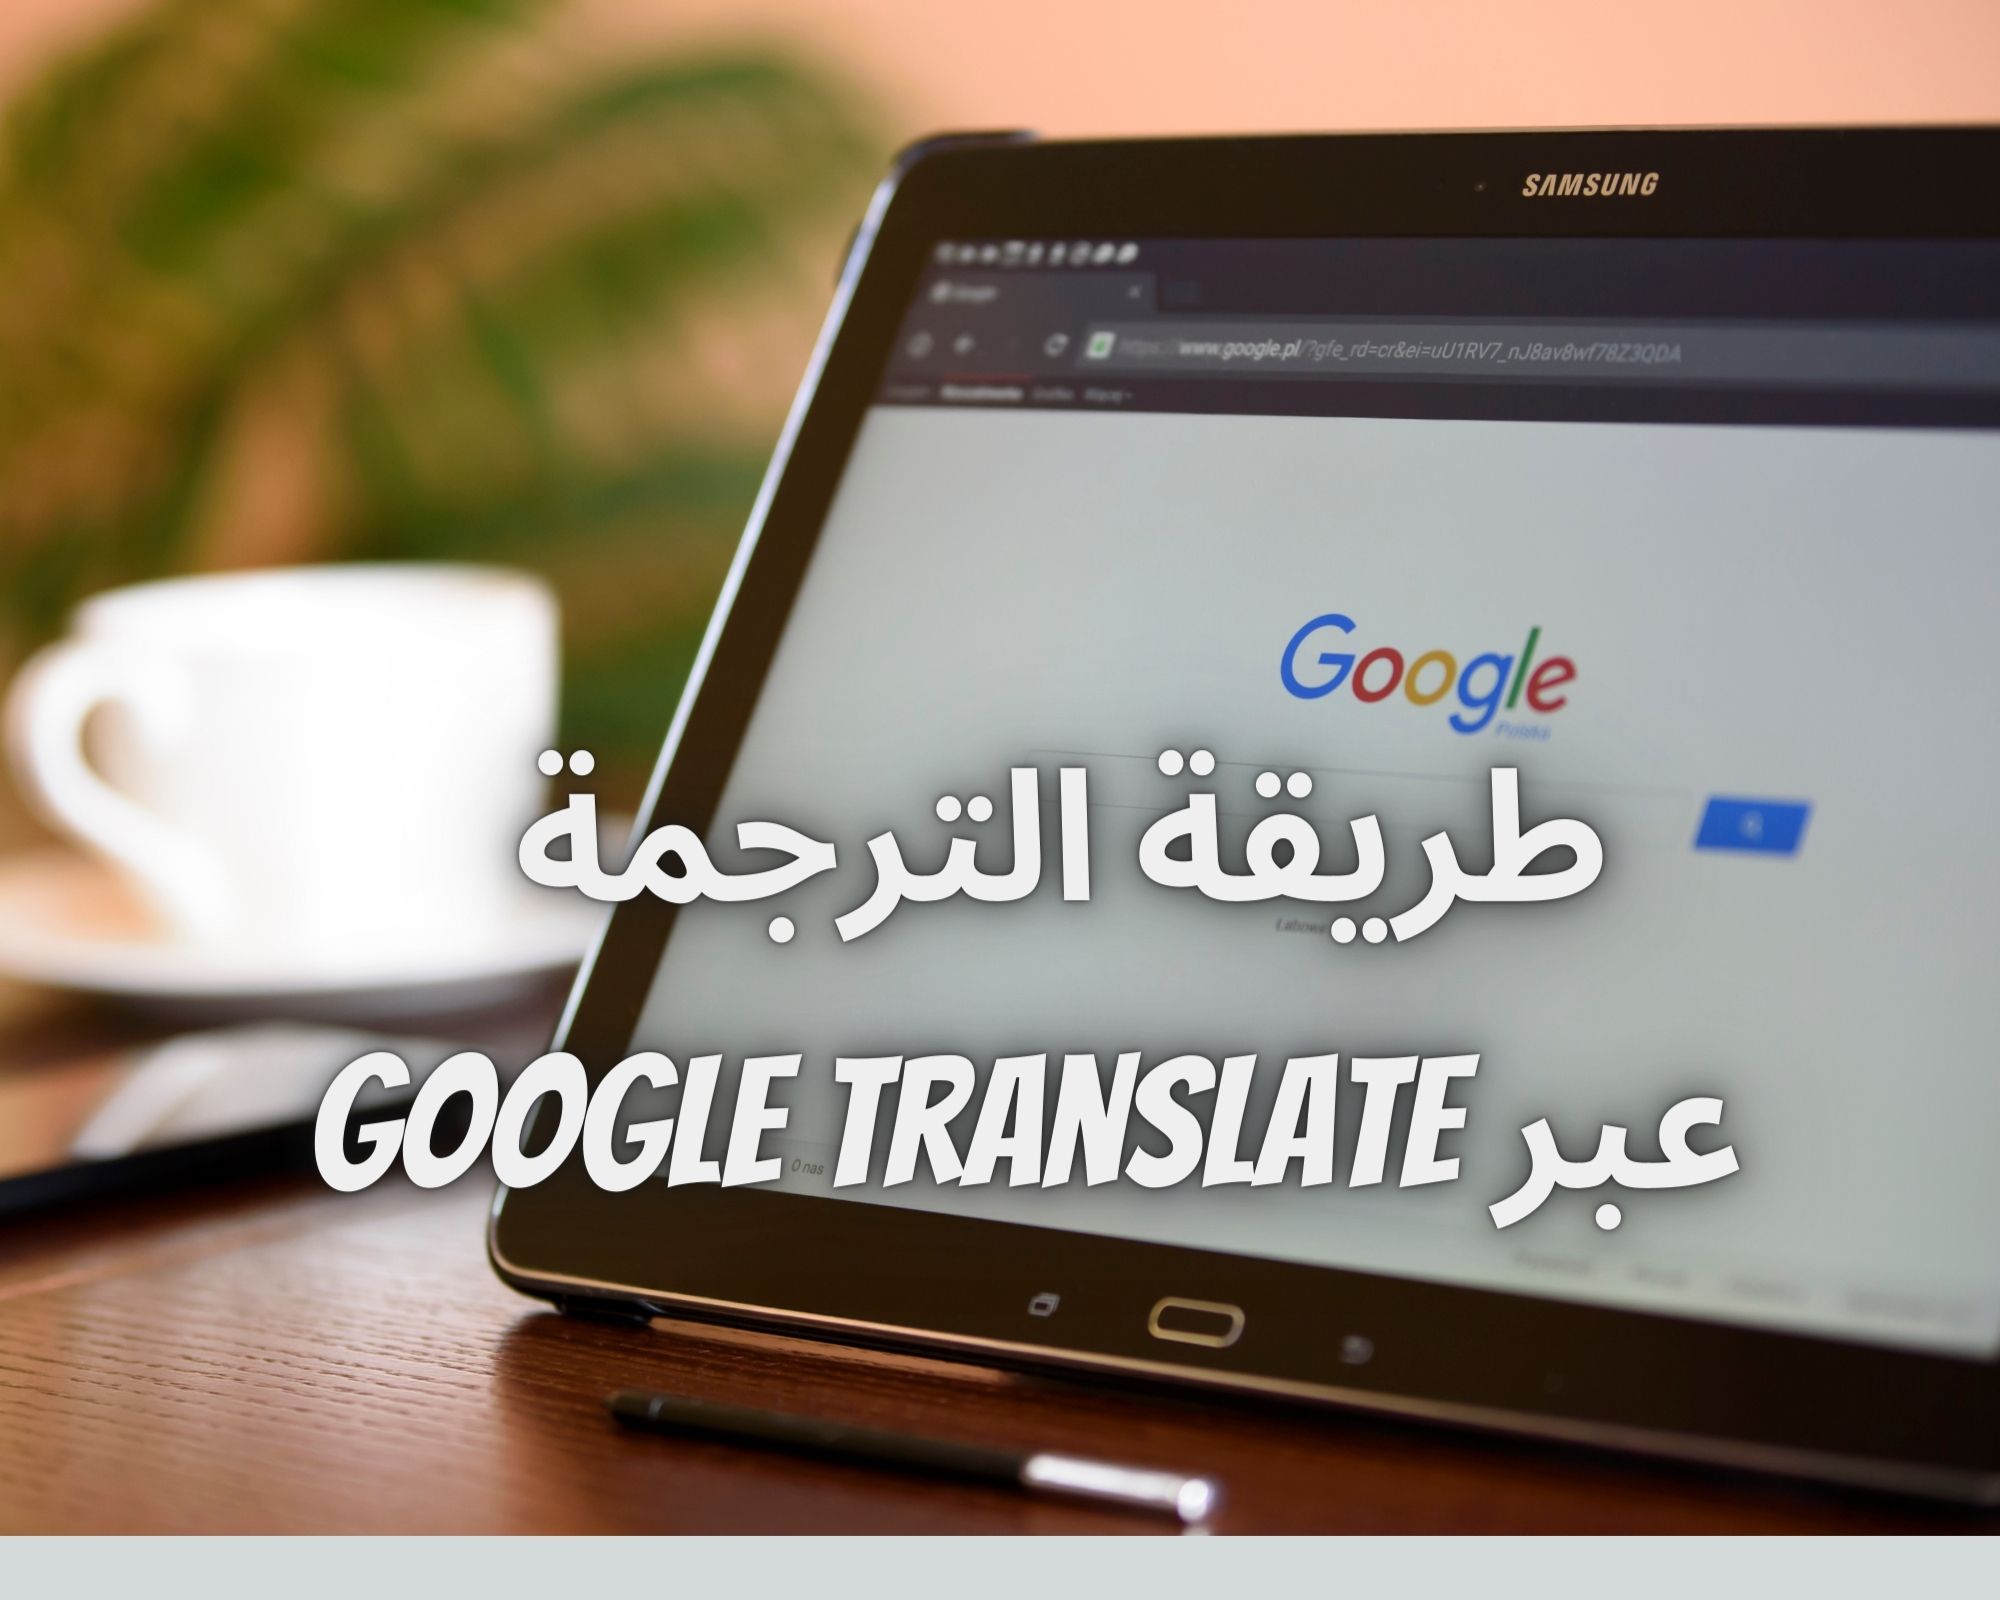 How to translate via Google Translate